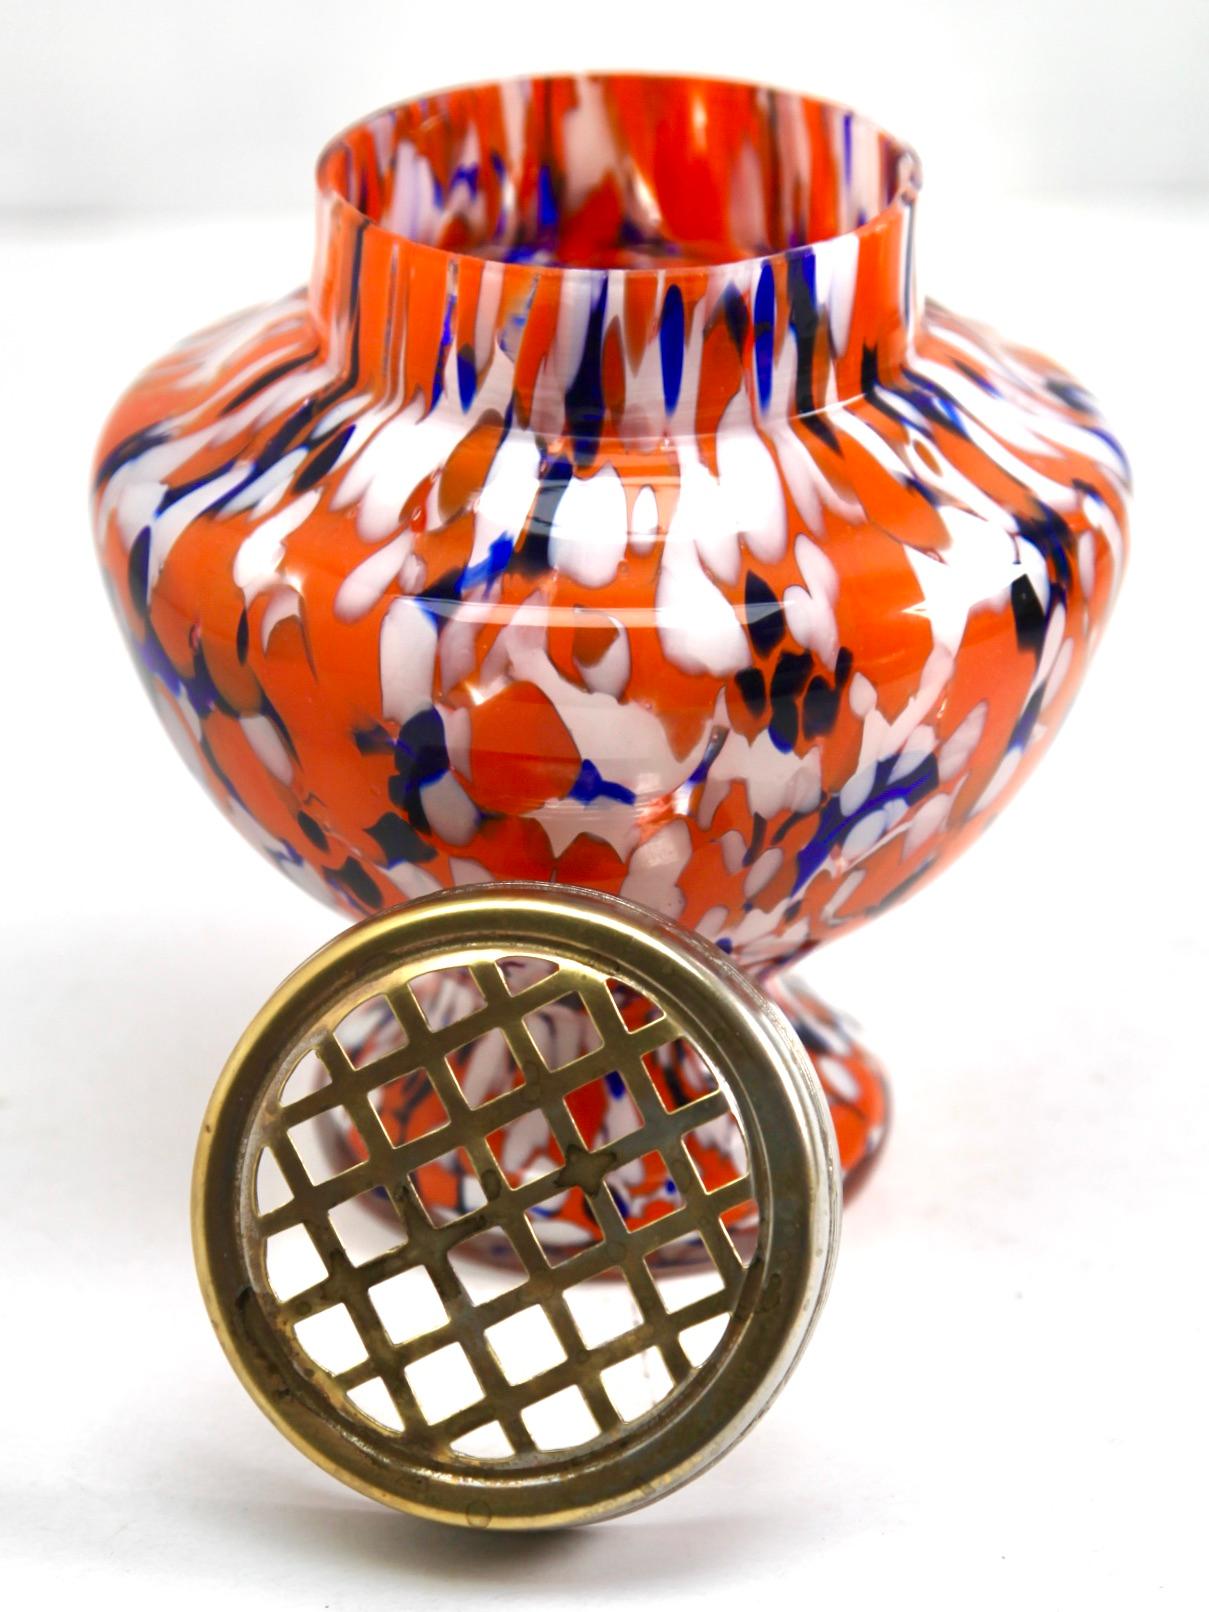 Décor dramatique multicolore, cobalt et orange, dans un vase en verre soufflé à la main dans le style Art Déco. Ce modèle de vase est souvent appelé 